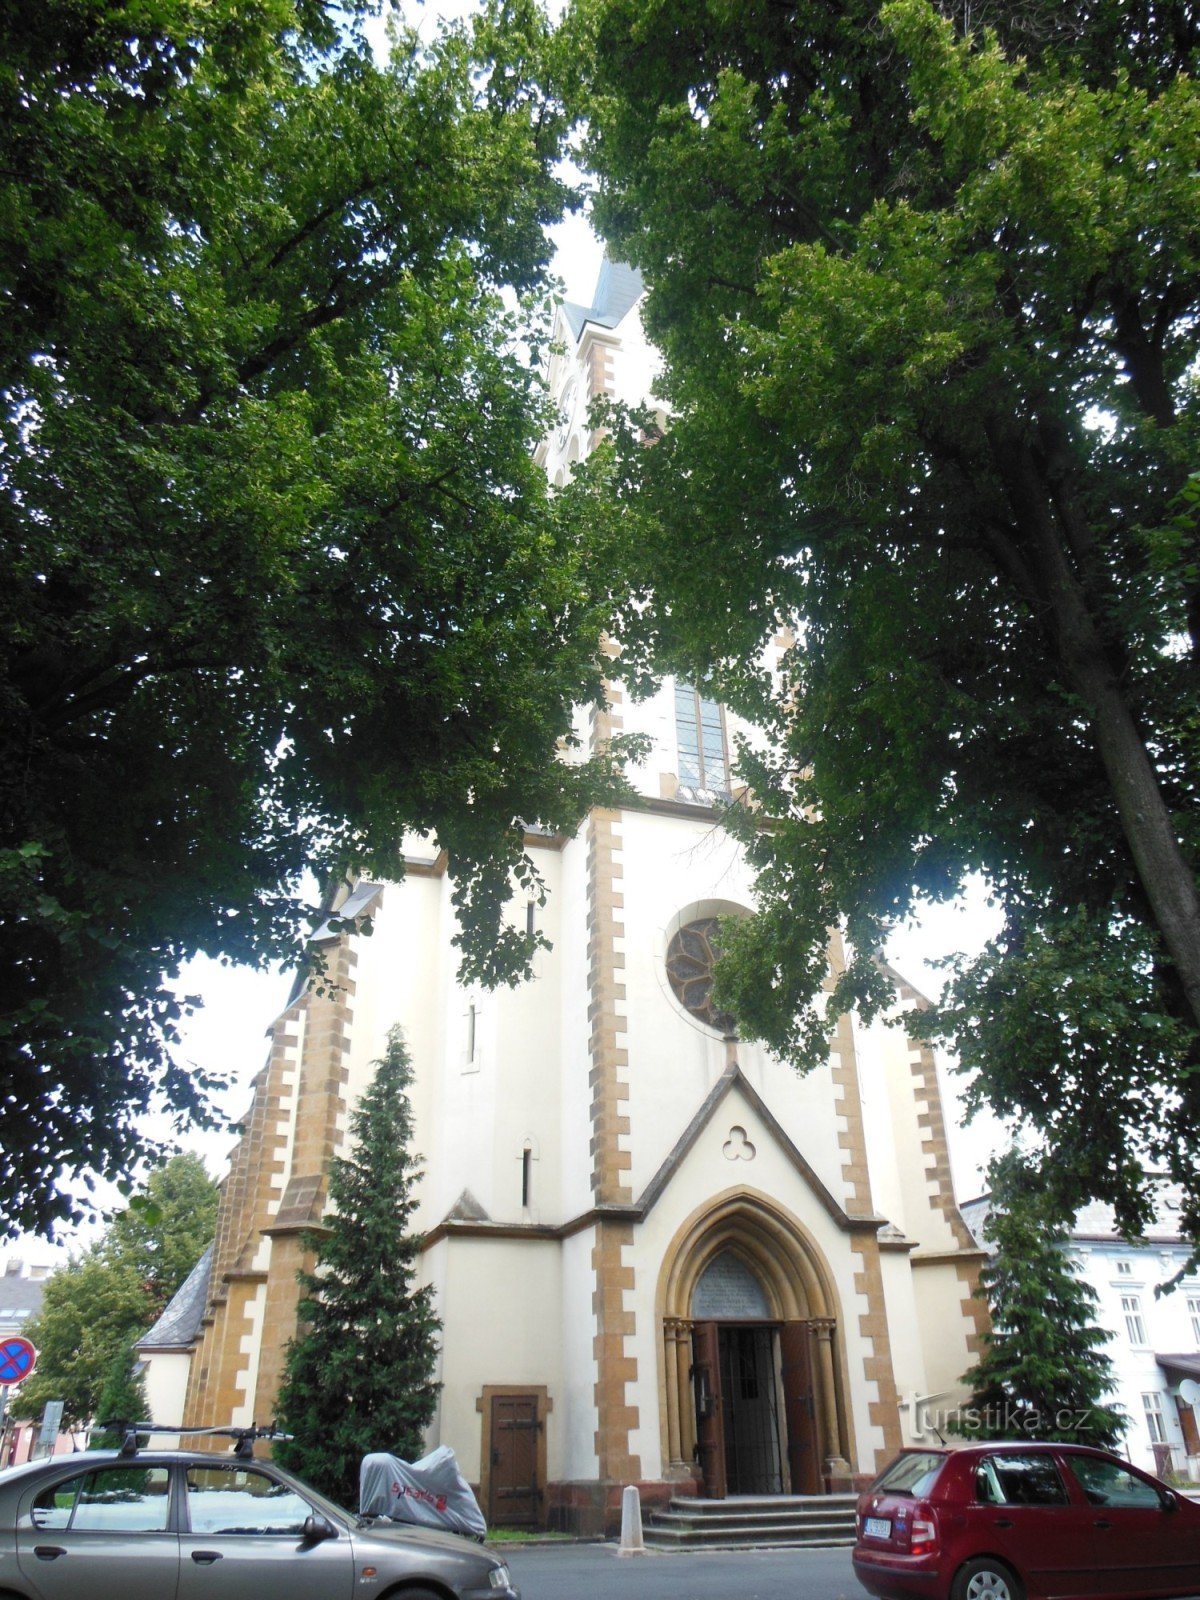 widok na kościół przez lipy Lipový náměstí